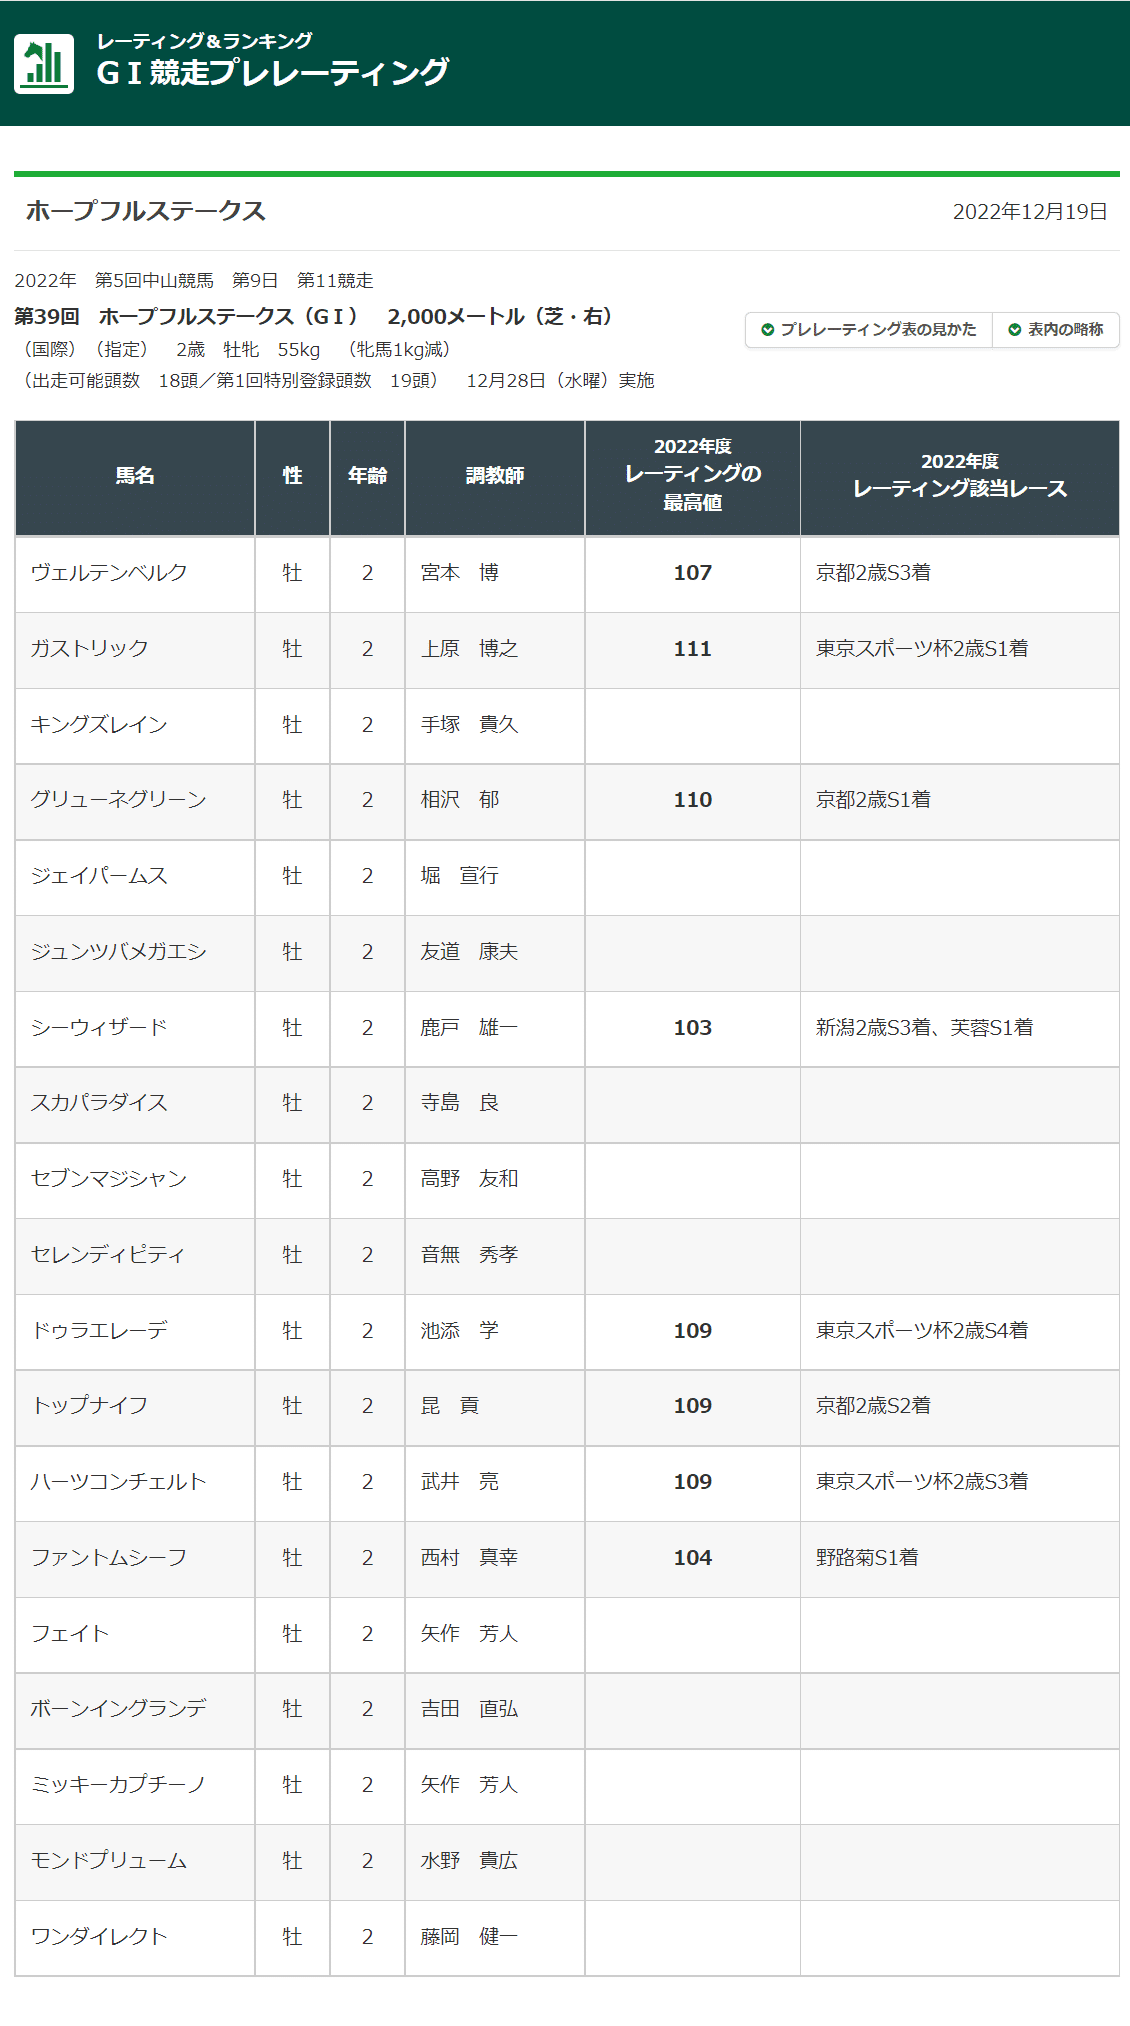 第39回ホープフルステークス2022年に登録している19頭のプレレーティング一覧です。レーティングのない馬が1頭います（0と記します）。ウェルテンベルク107・ガストリック111・キングズレイン0・グリューネグリーン110・ジェイパームス0・ジュンツバメガエシ0・シーウィザード103・スカパラダイス0・セブンマジシャン0・セレンディピティ0・ドゥラエレーデ109・トップナイフ109・ハーツコンチェルト109・ファントムシーフ109・フェイト0・ボーンイングランデ0・ミッキーカプチーノ0・モンドプリューム0・ワンダイレクト0。以上。